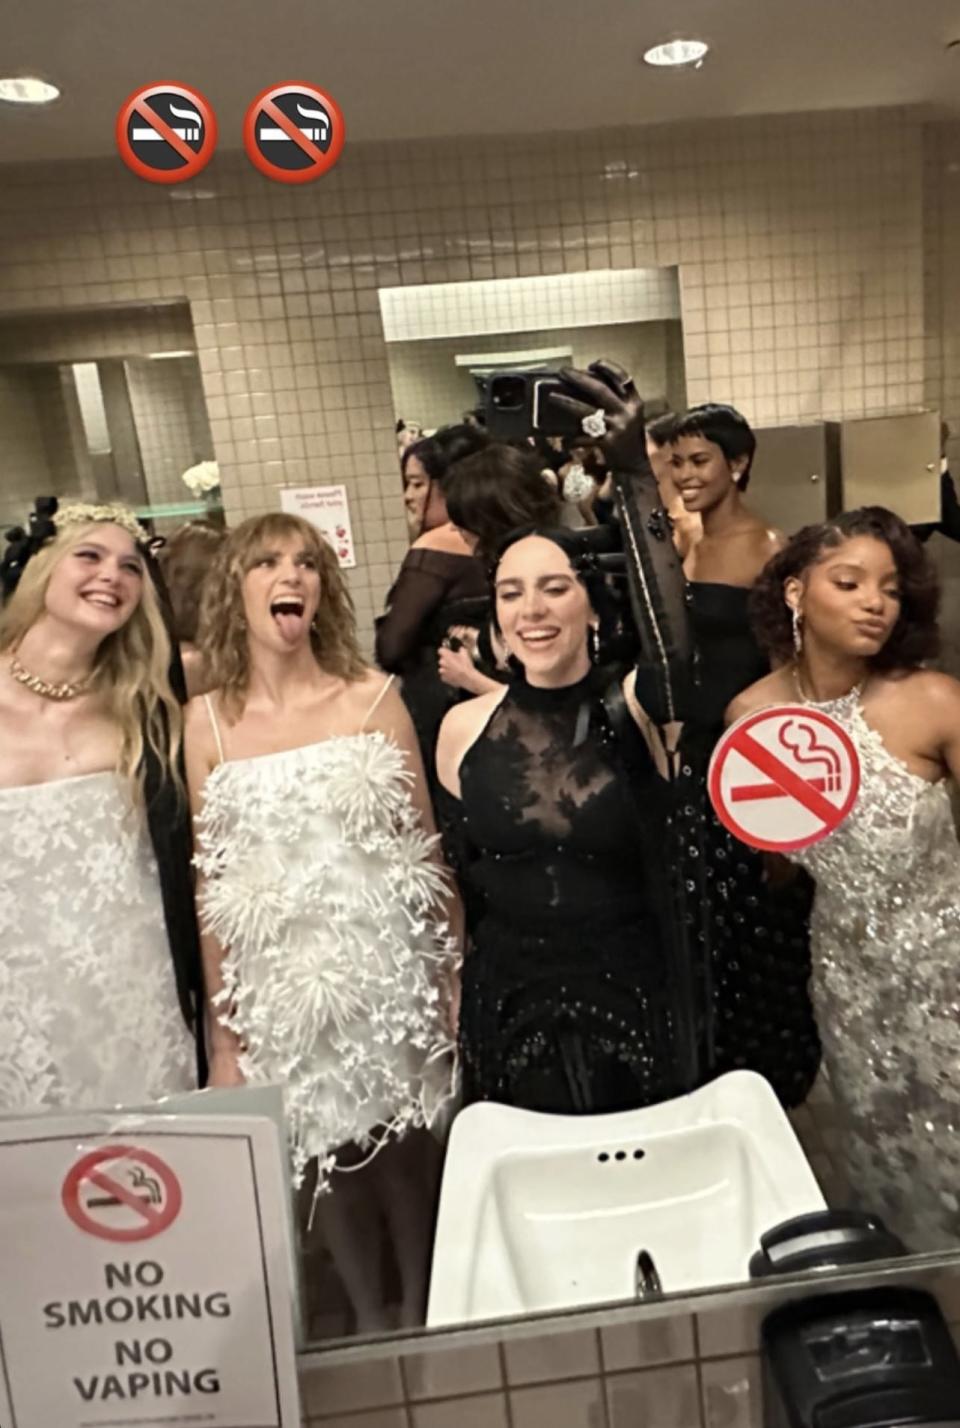 Celebrities taking selfies in the bathroom